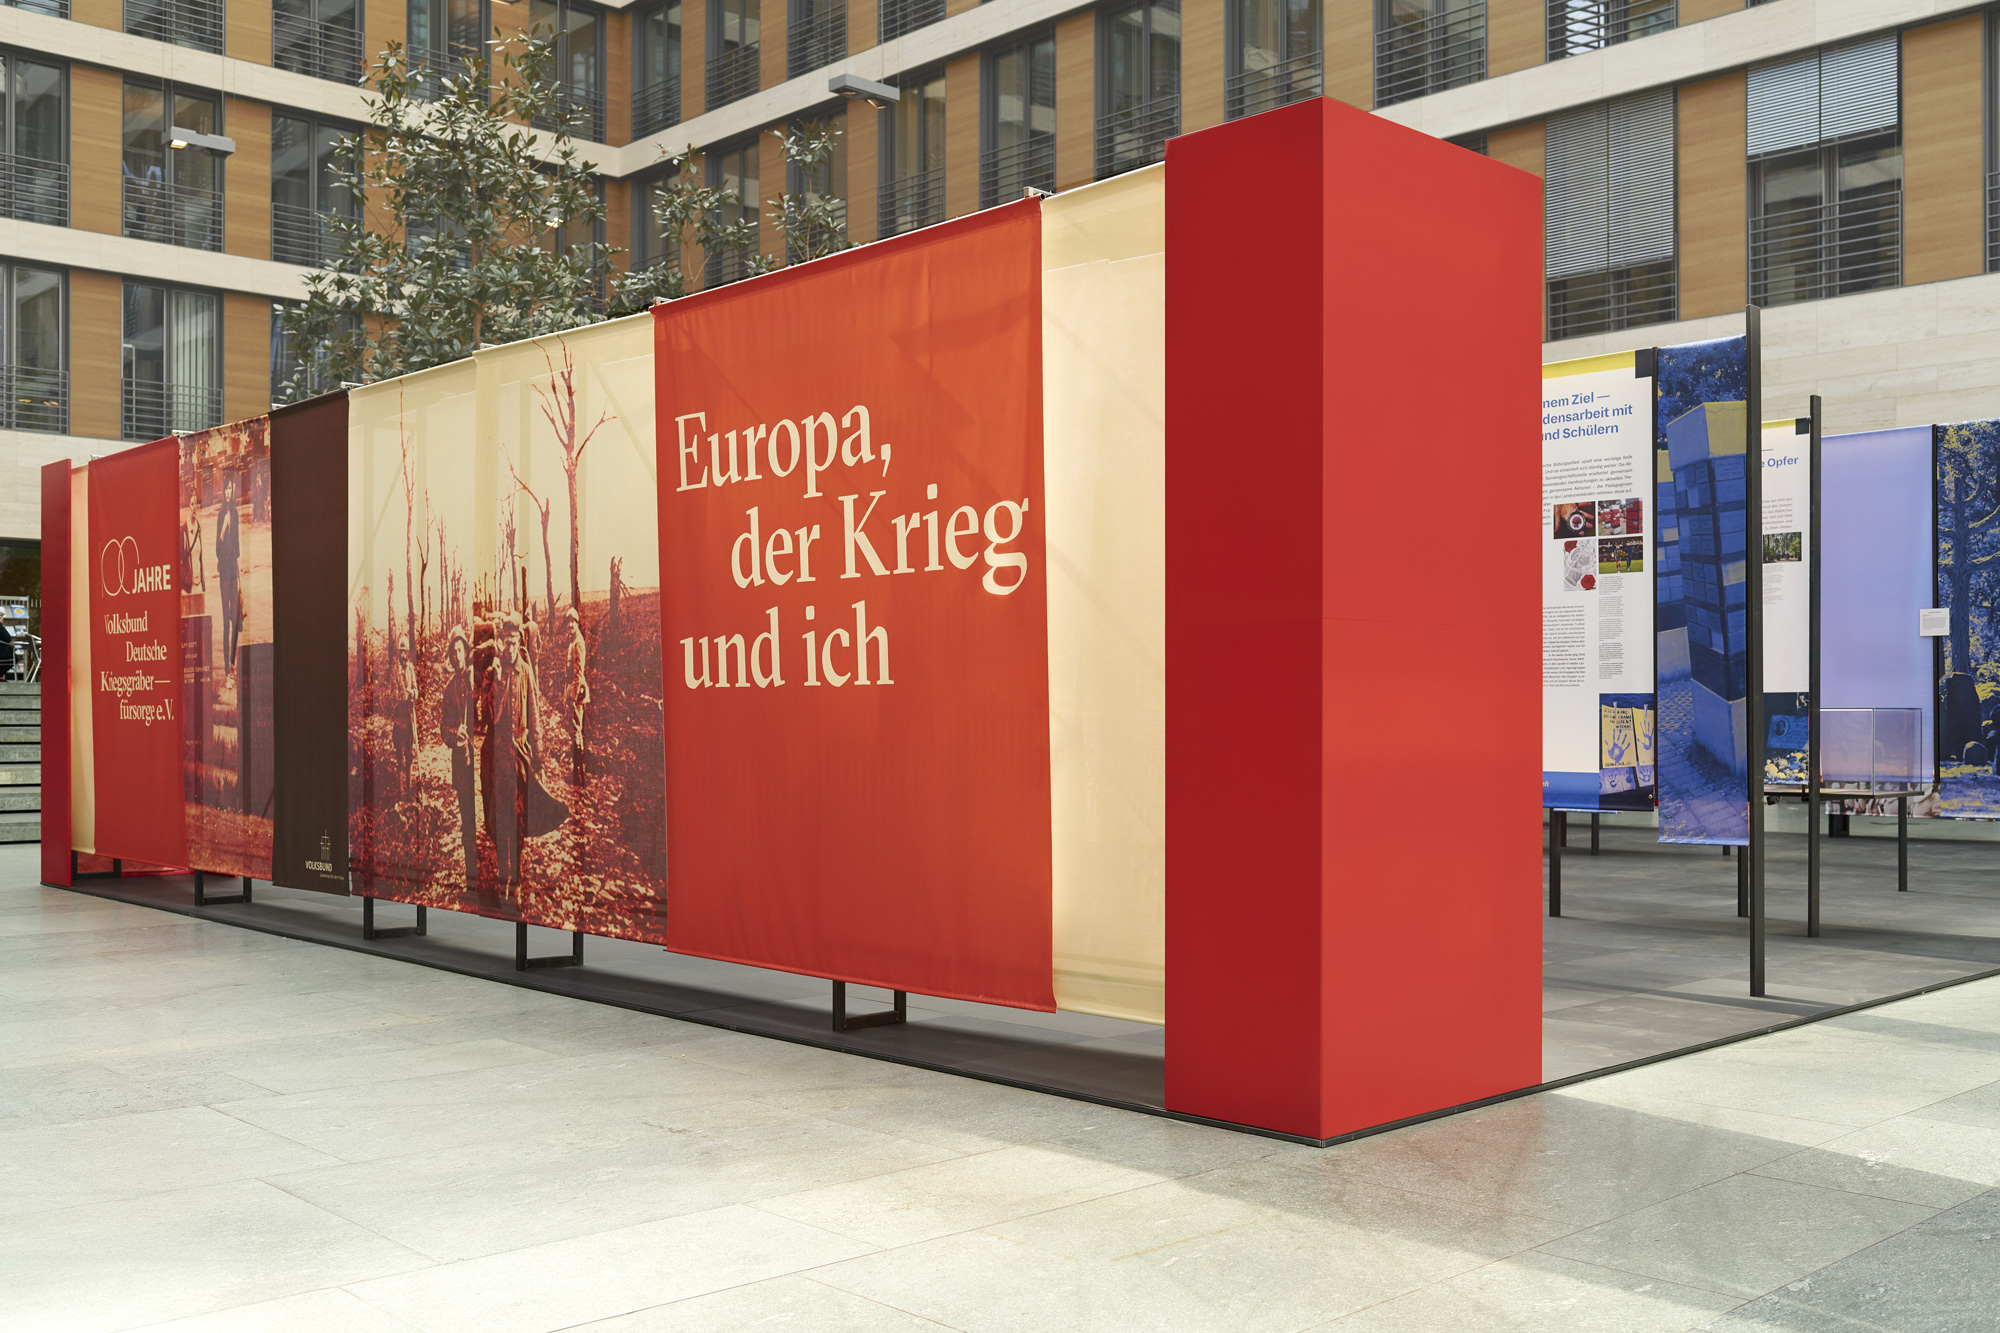 Mäder Haslbeck exhibition / Europa, der Krieg und Ich